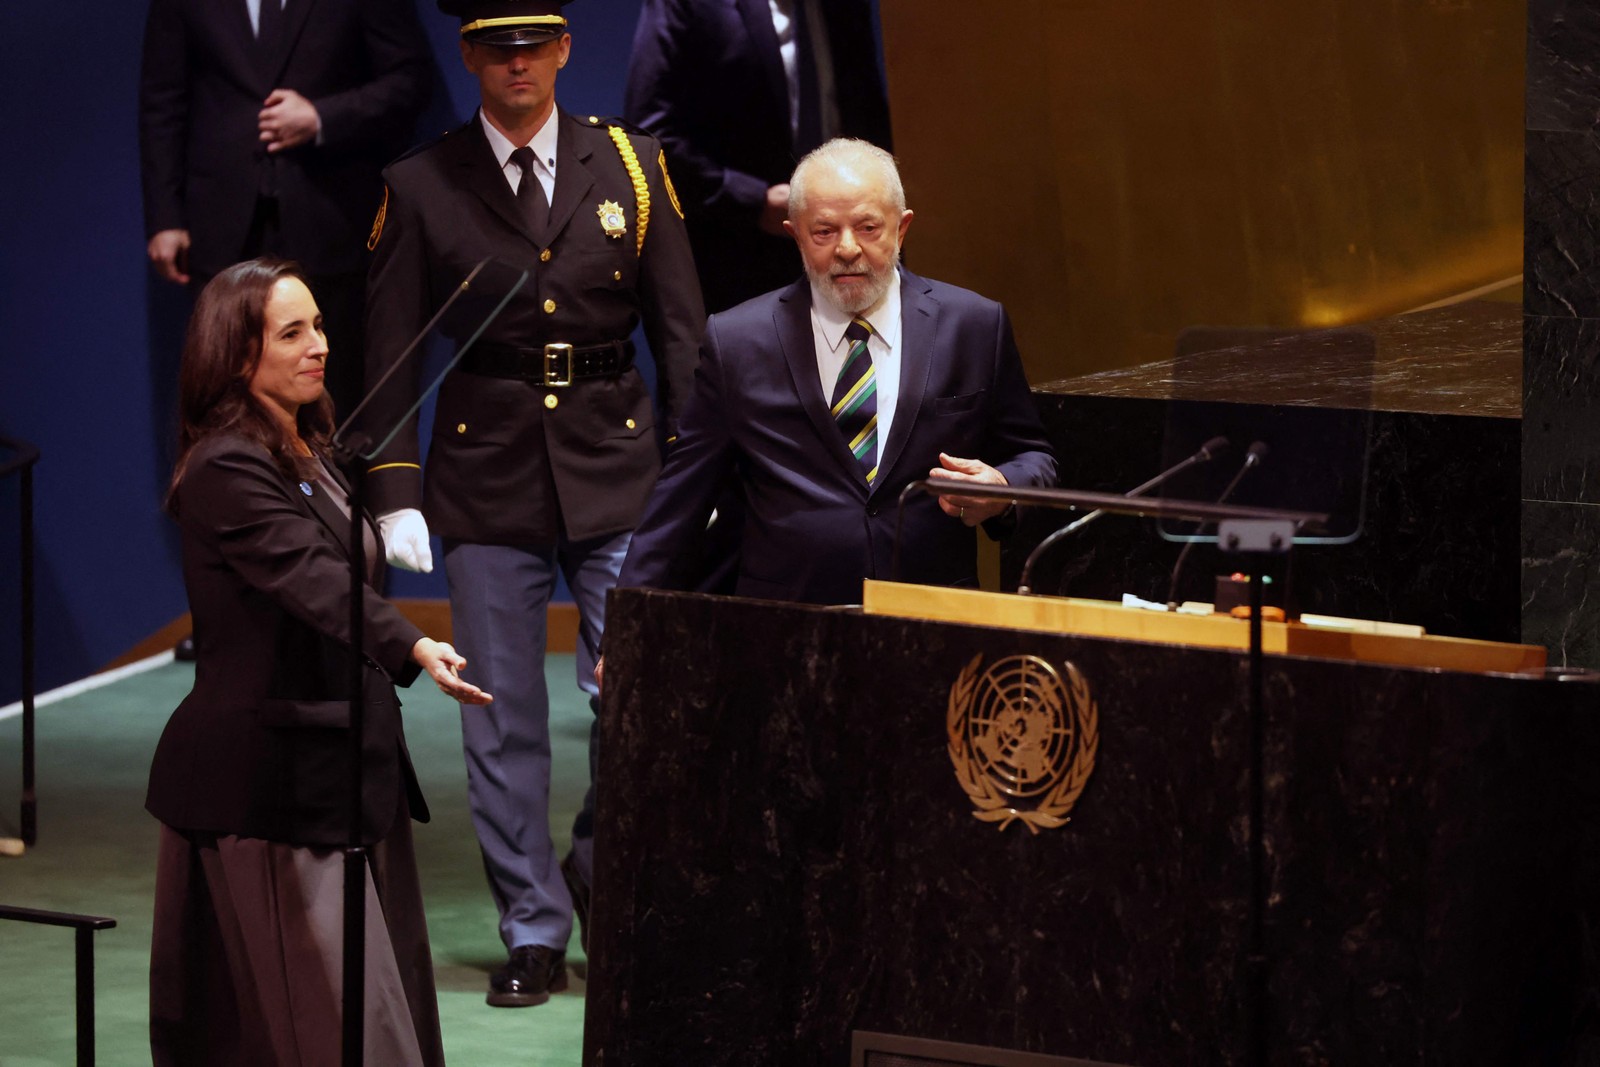 O presidente Luiz Inácio Lula da Silva do Brasil discursa na 78ª sessão da Assembleia Geral das Nações Unidas — Foto: SPENCER PLATT / GETTY IMAGES NORTH AMERICA / Getty Images via AFP